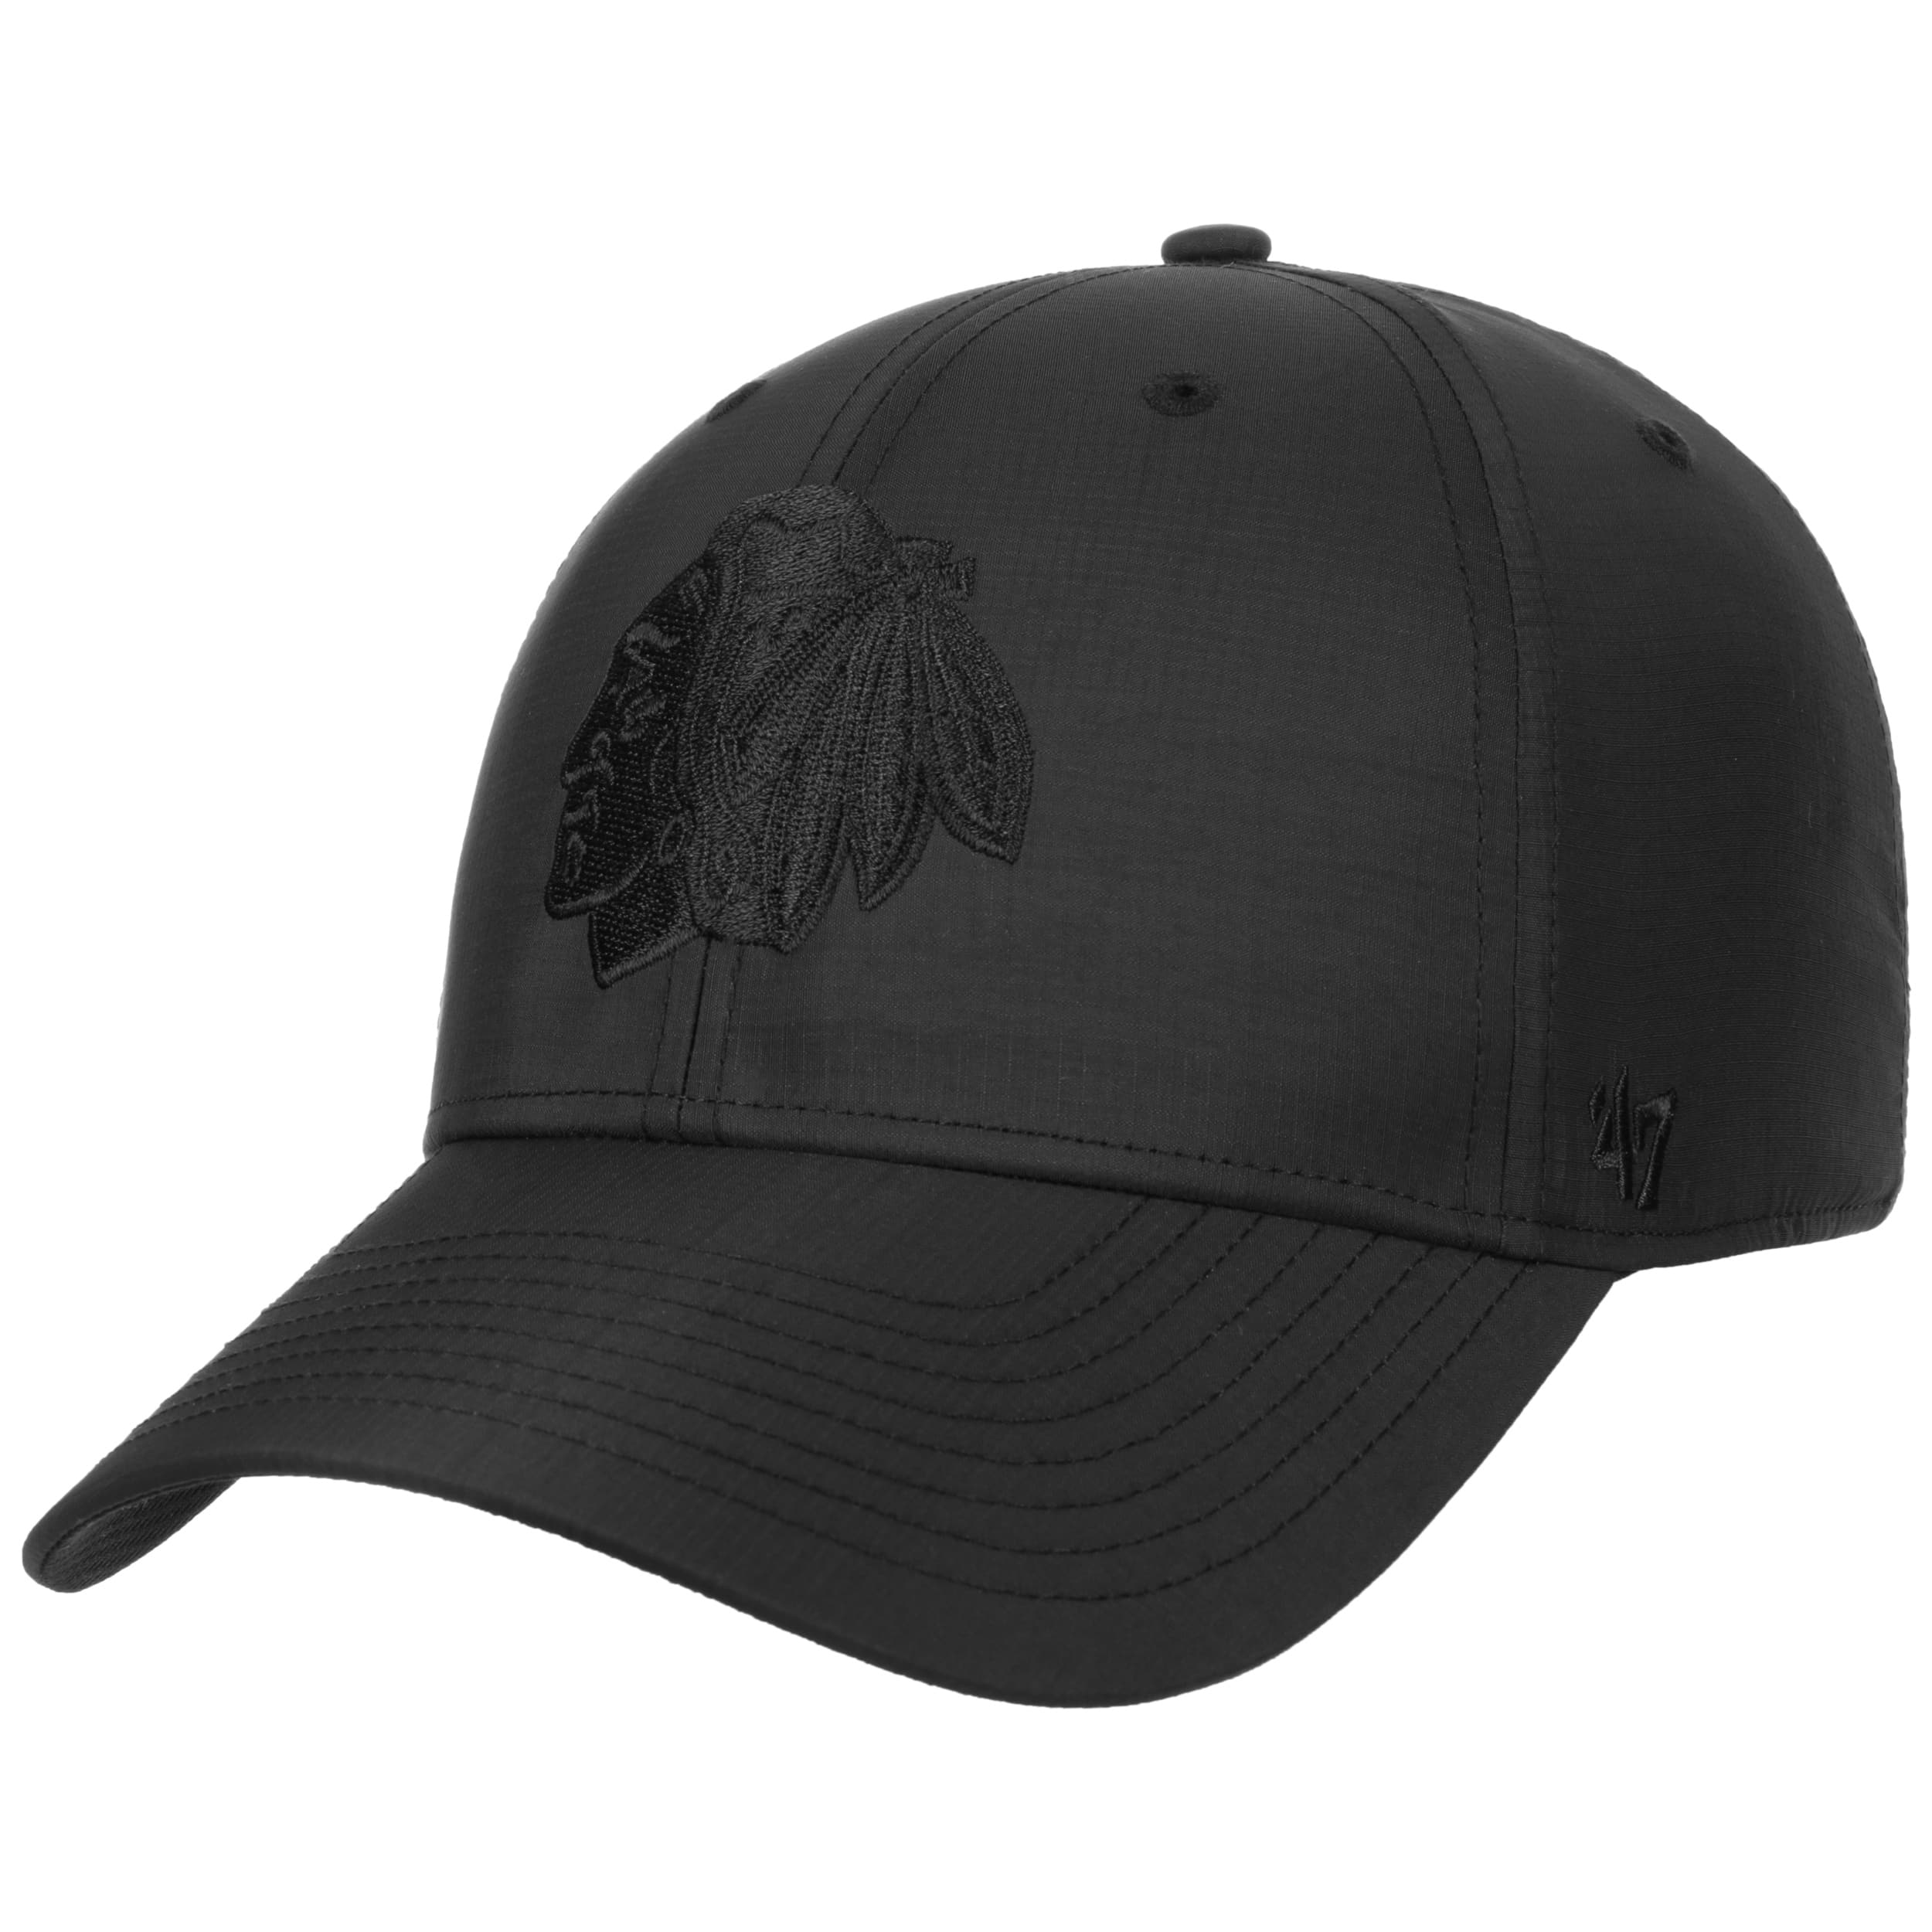 Chicago Blackhawks NHL Floppy Hat